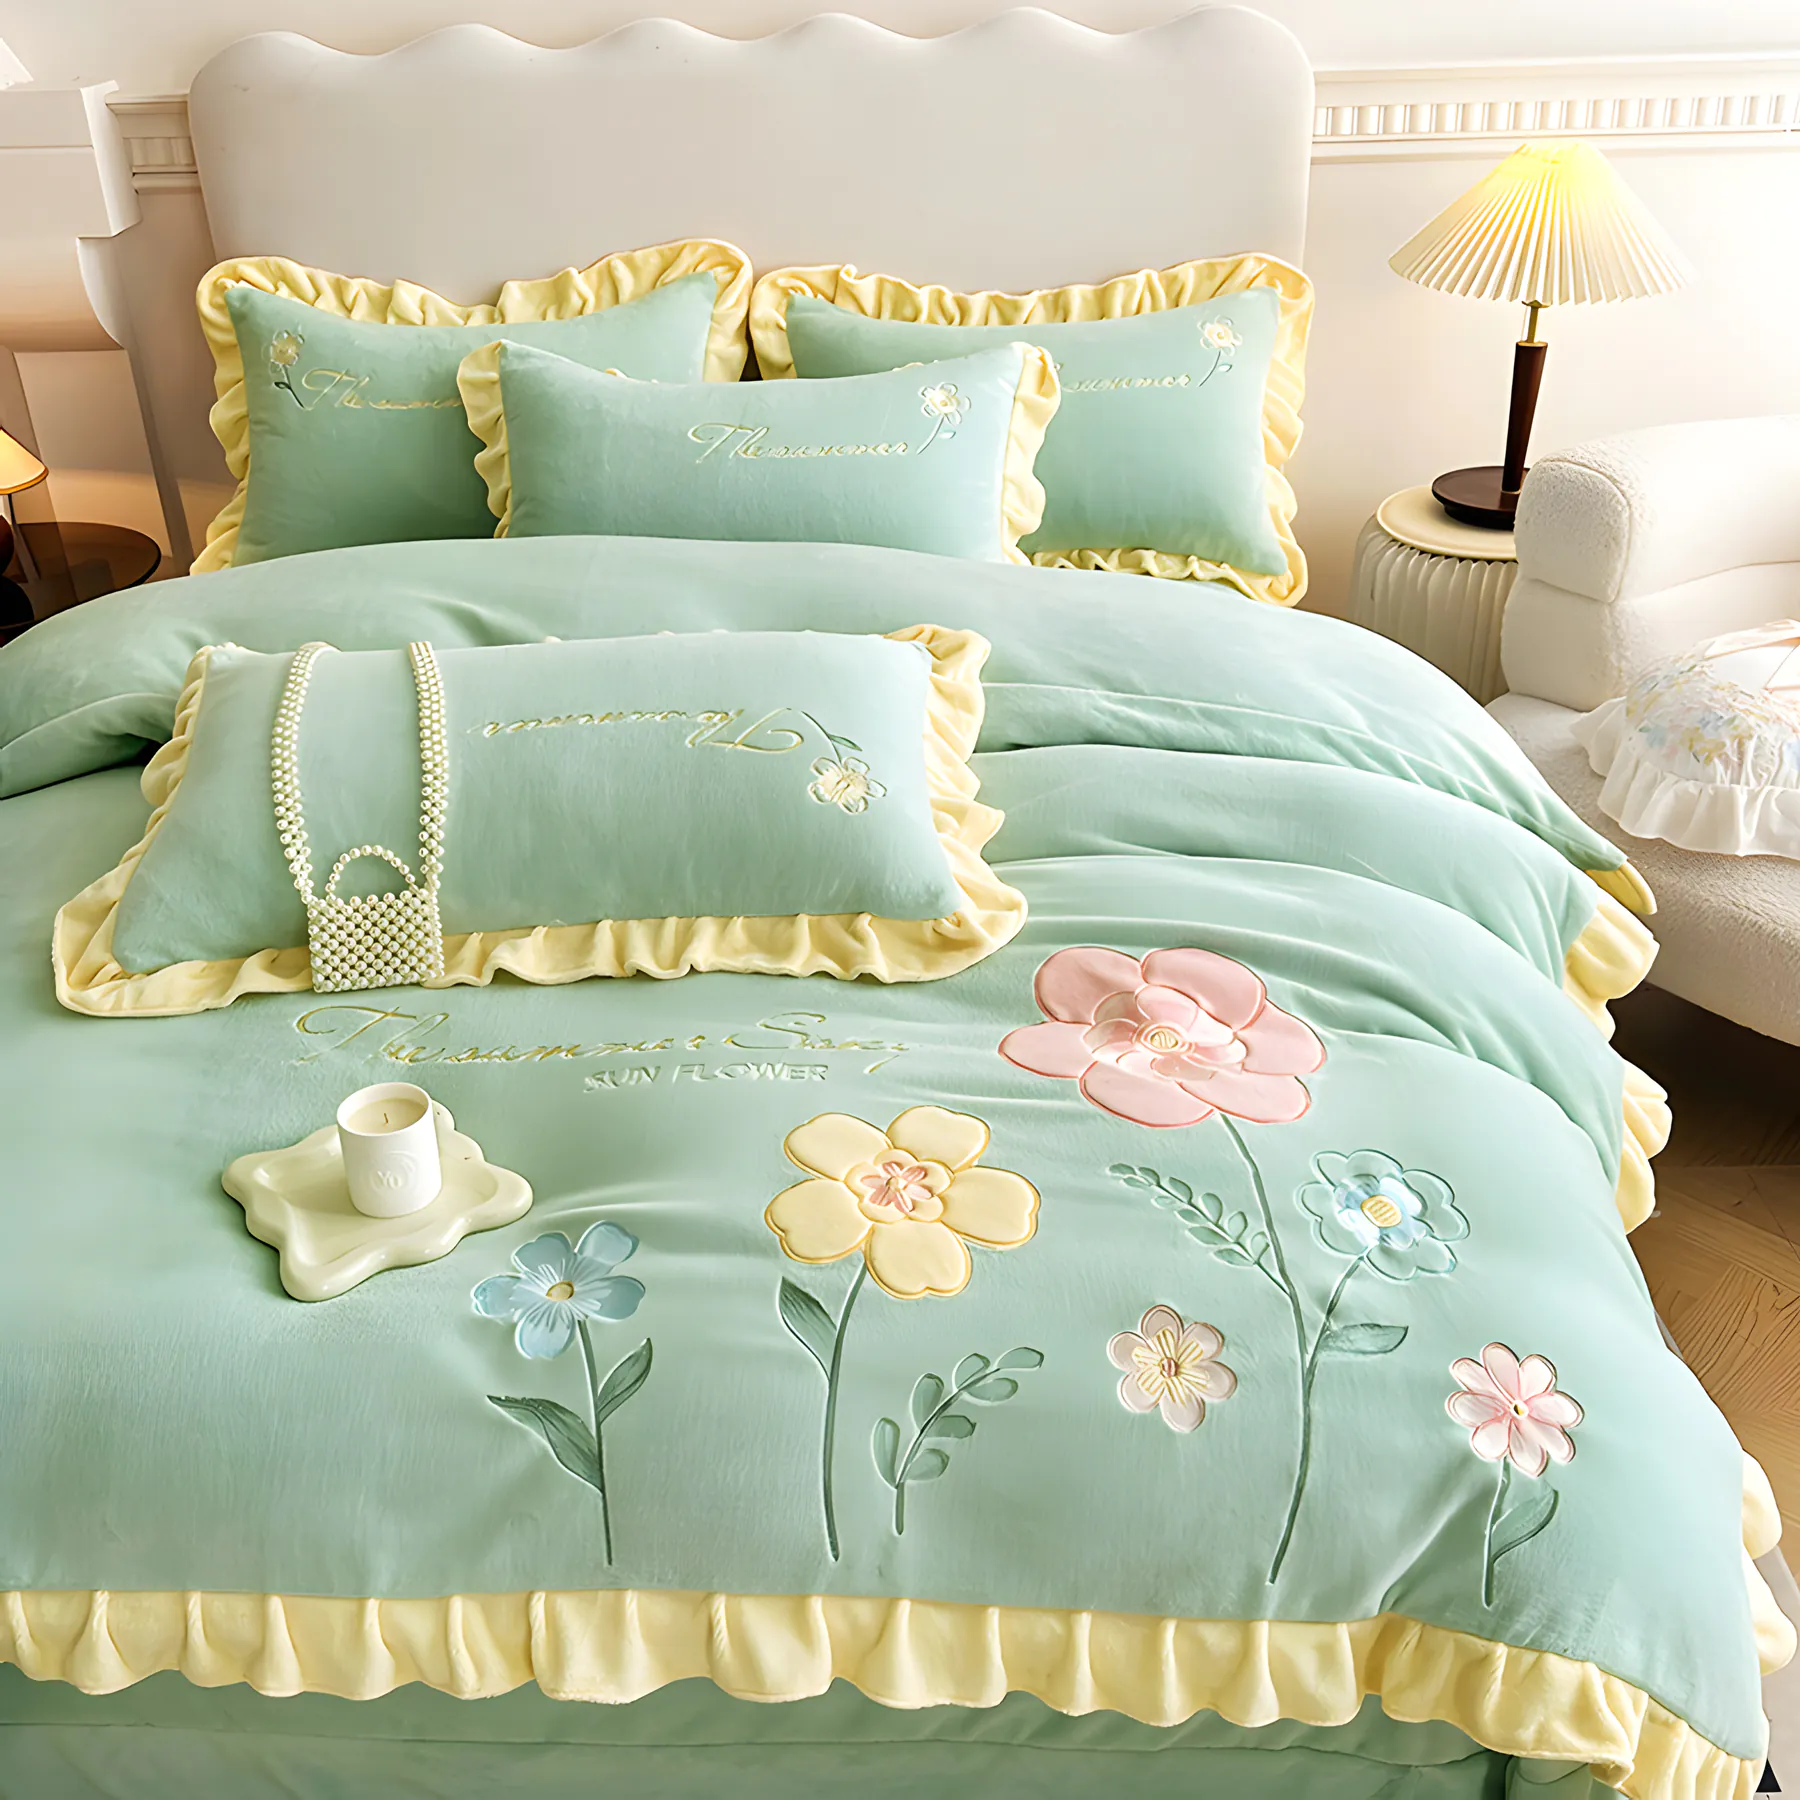 Floral Embroidery Matte Milk Velvet Comforter Cover Bedding Set03